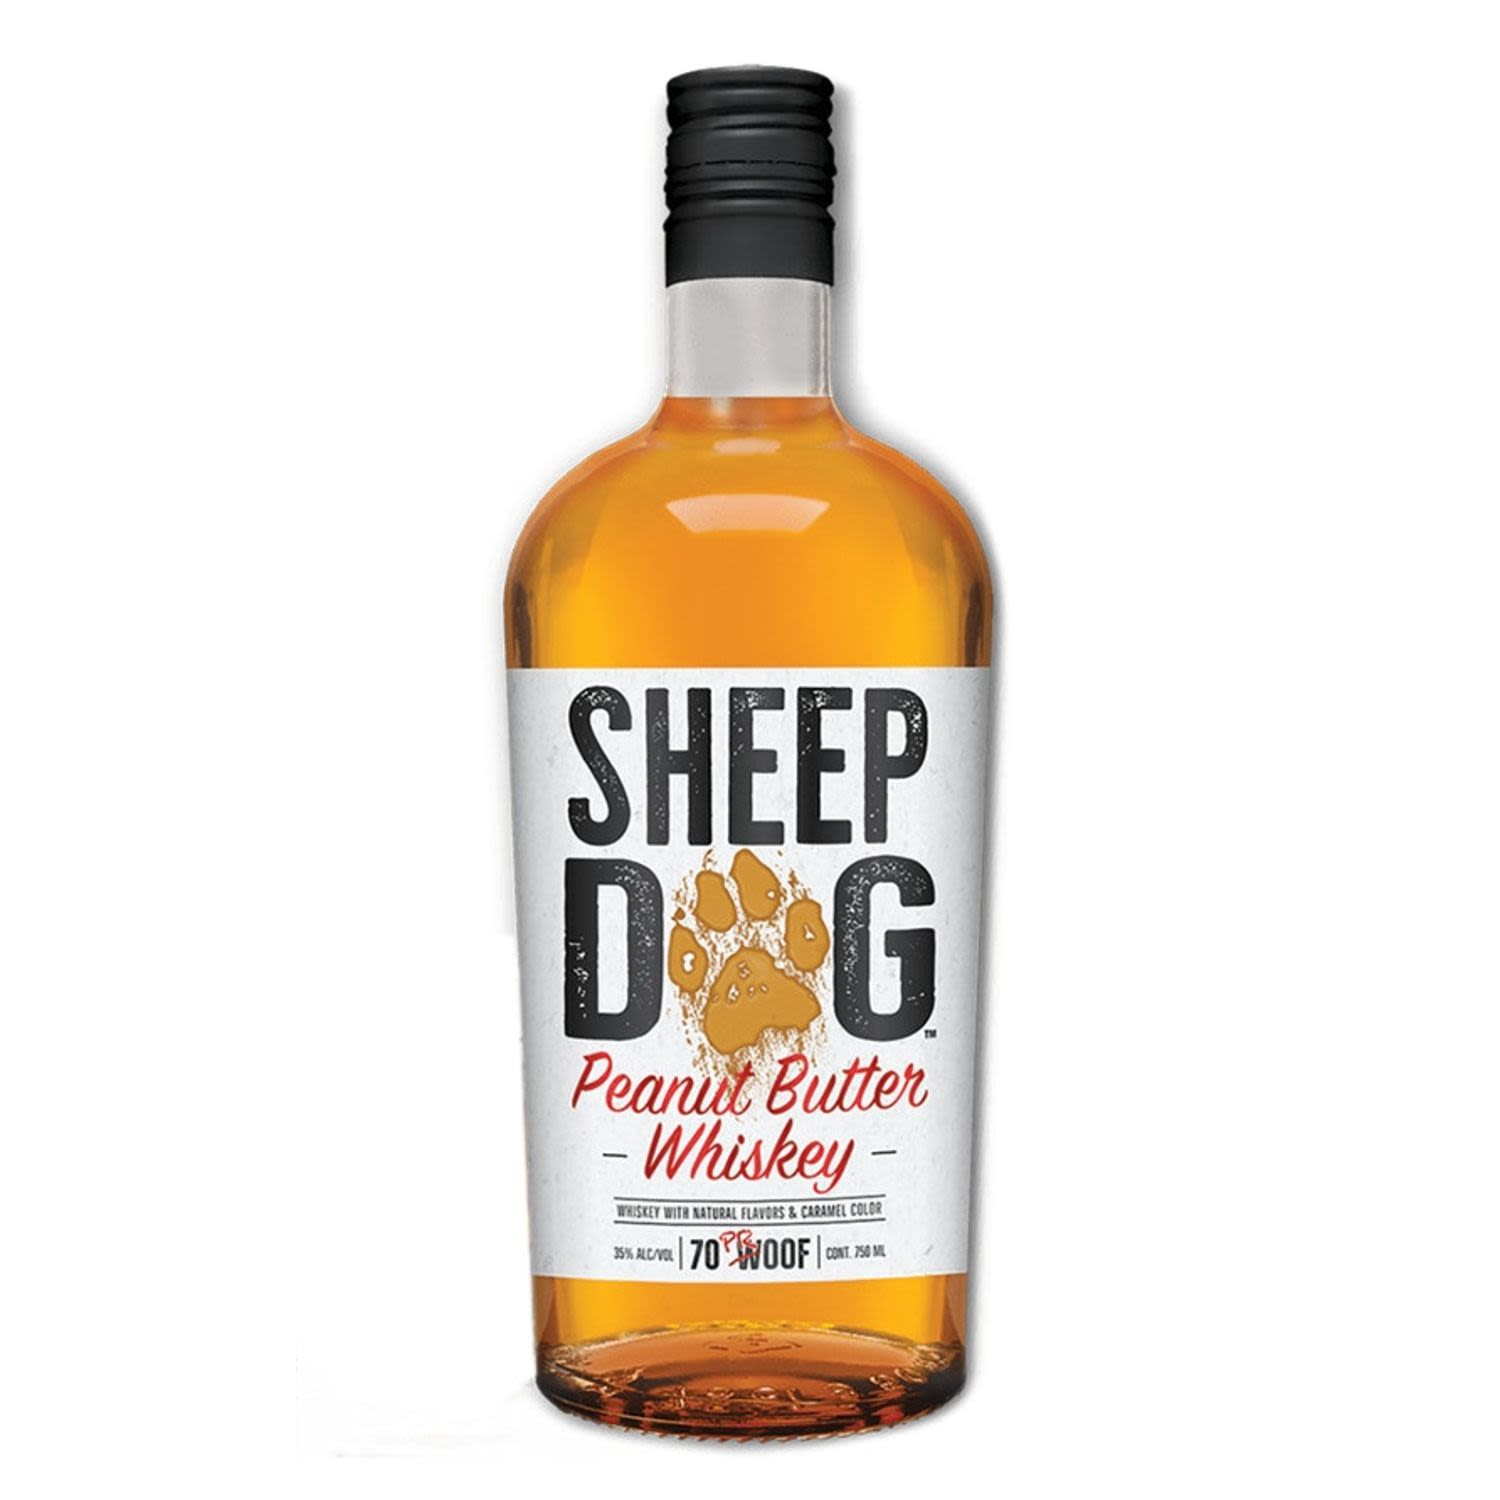 Sheep Dog Peanut Butter Whiskey 700mL Bottle